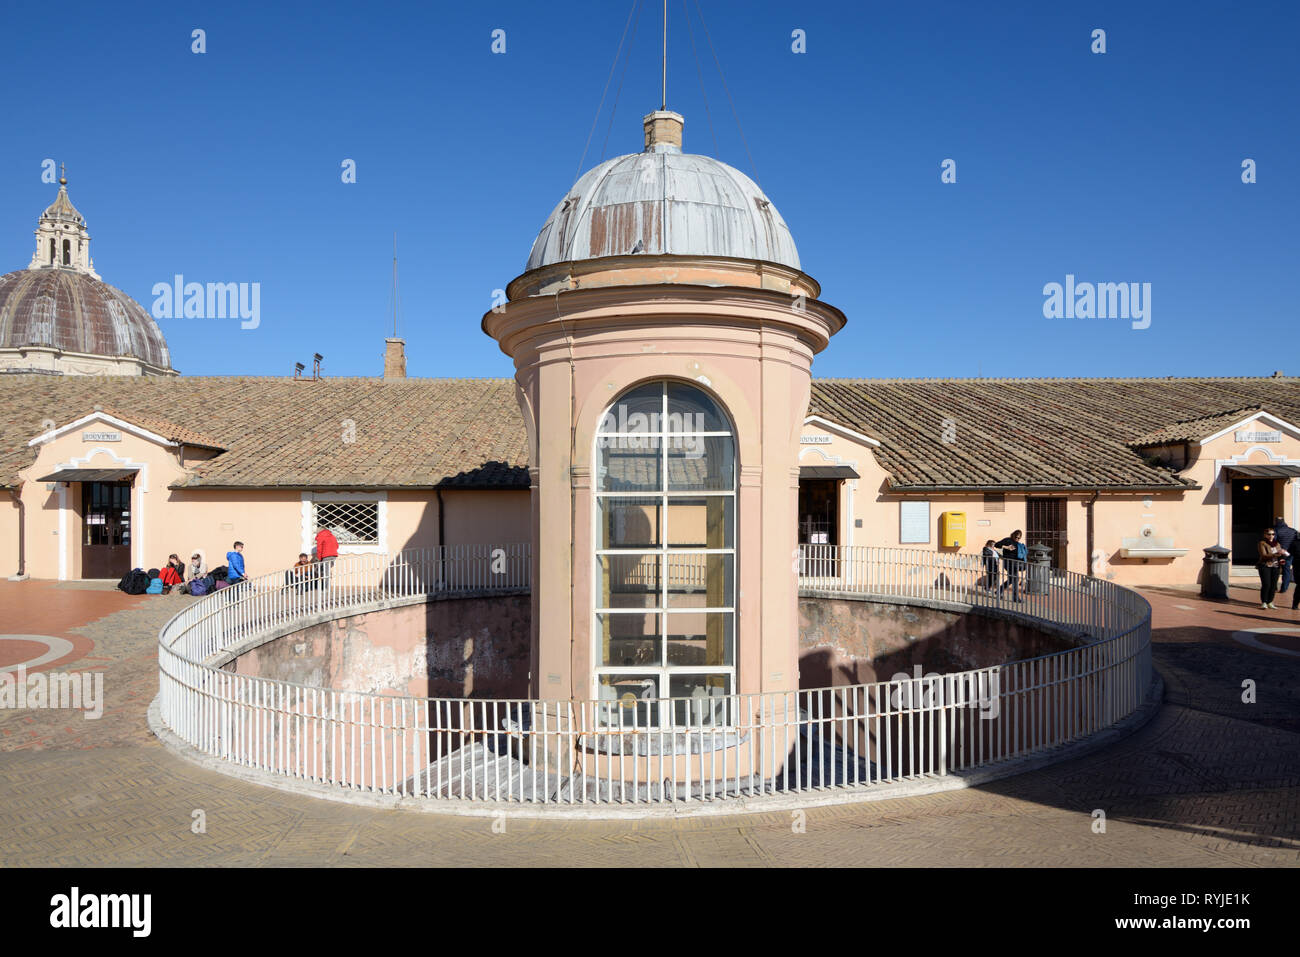 Toit en forme de coupole, toit de la lanterne, tour coupole de toit ou des lucarnes sur le toit de la Basilique Saint Pierre ou l'Église Vatican Rome Italie Banque D'Images